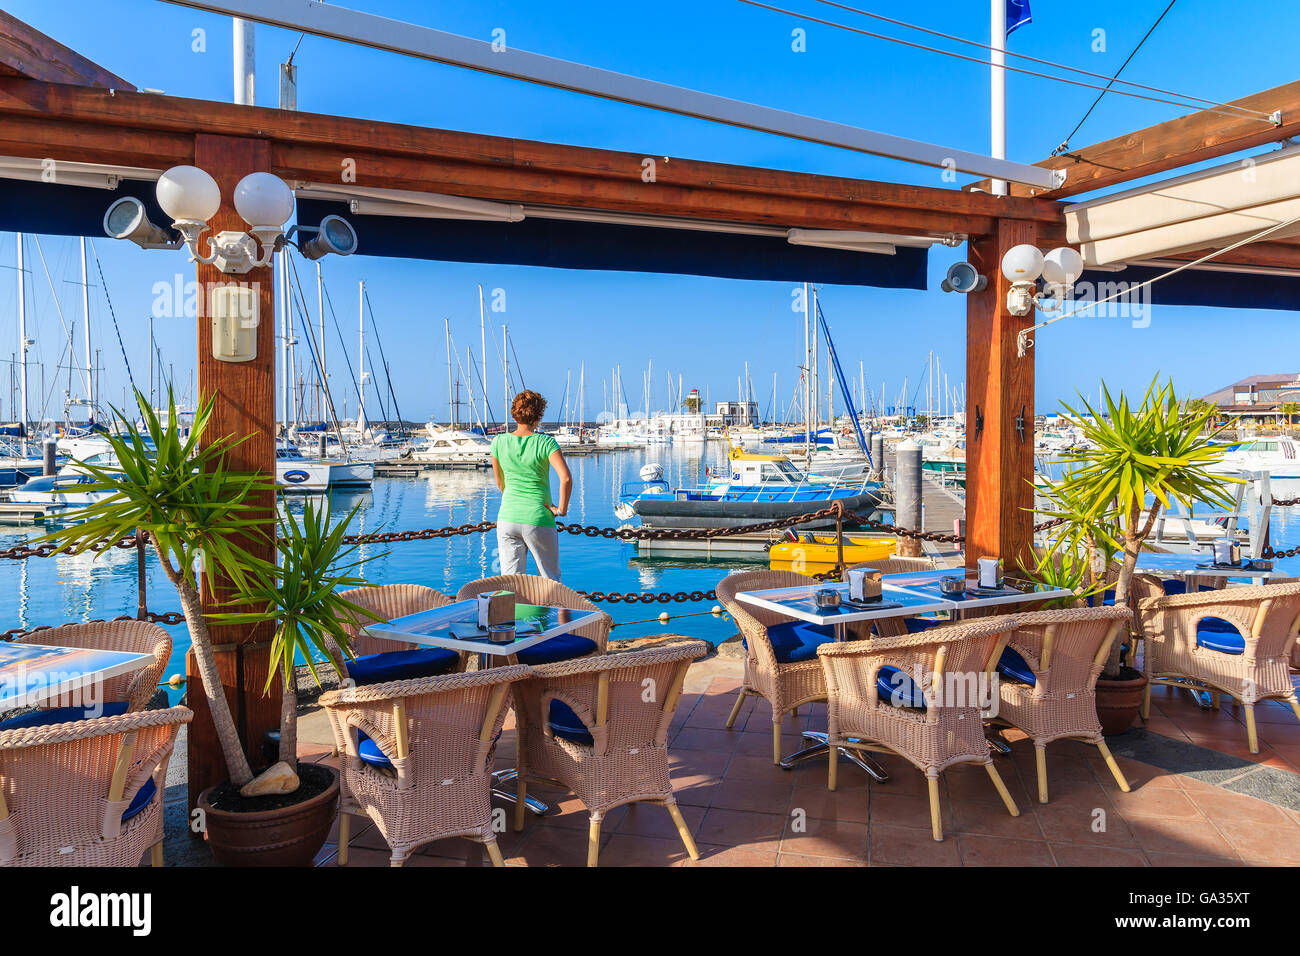 MARINA RUBICON, Lanzarote Island - Jan 17, 2015: il giovane turista in piedi in ristorante nel Rubicone yacht port. Lanzarote è meta di vacanze grazie al soleggiato clima tropicale. Foto Stock